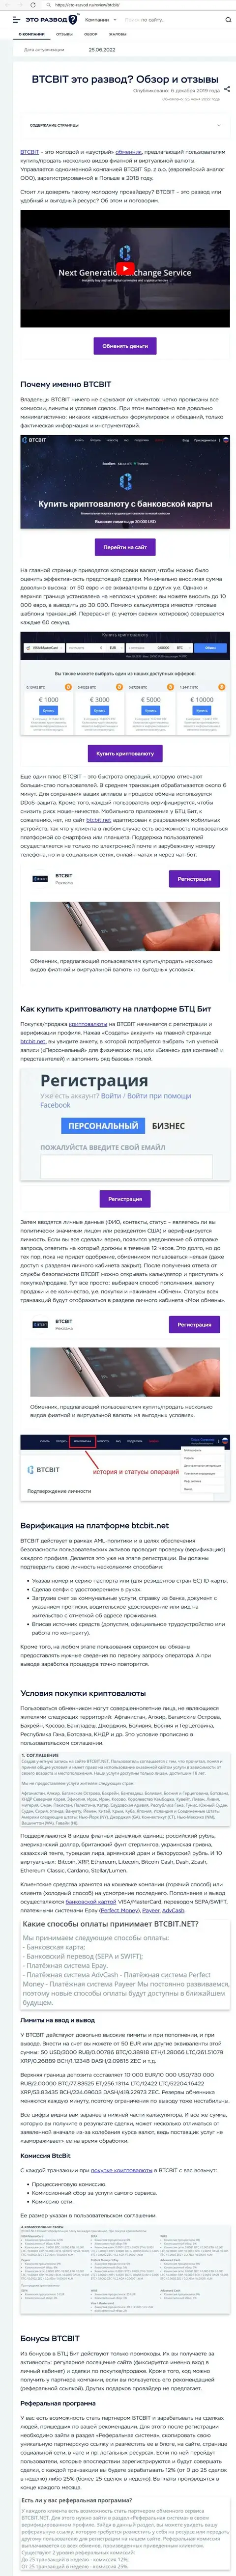 Обзор деятельности и условия для работы обменки BTCBIT Sp. z.o.o в обзорной статье на web-ресурсе Eto-Razvod Ru